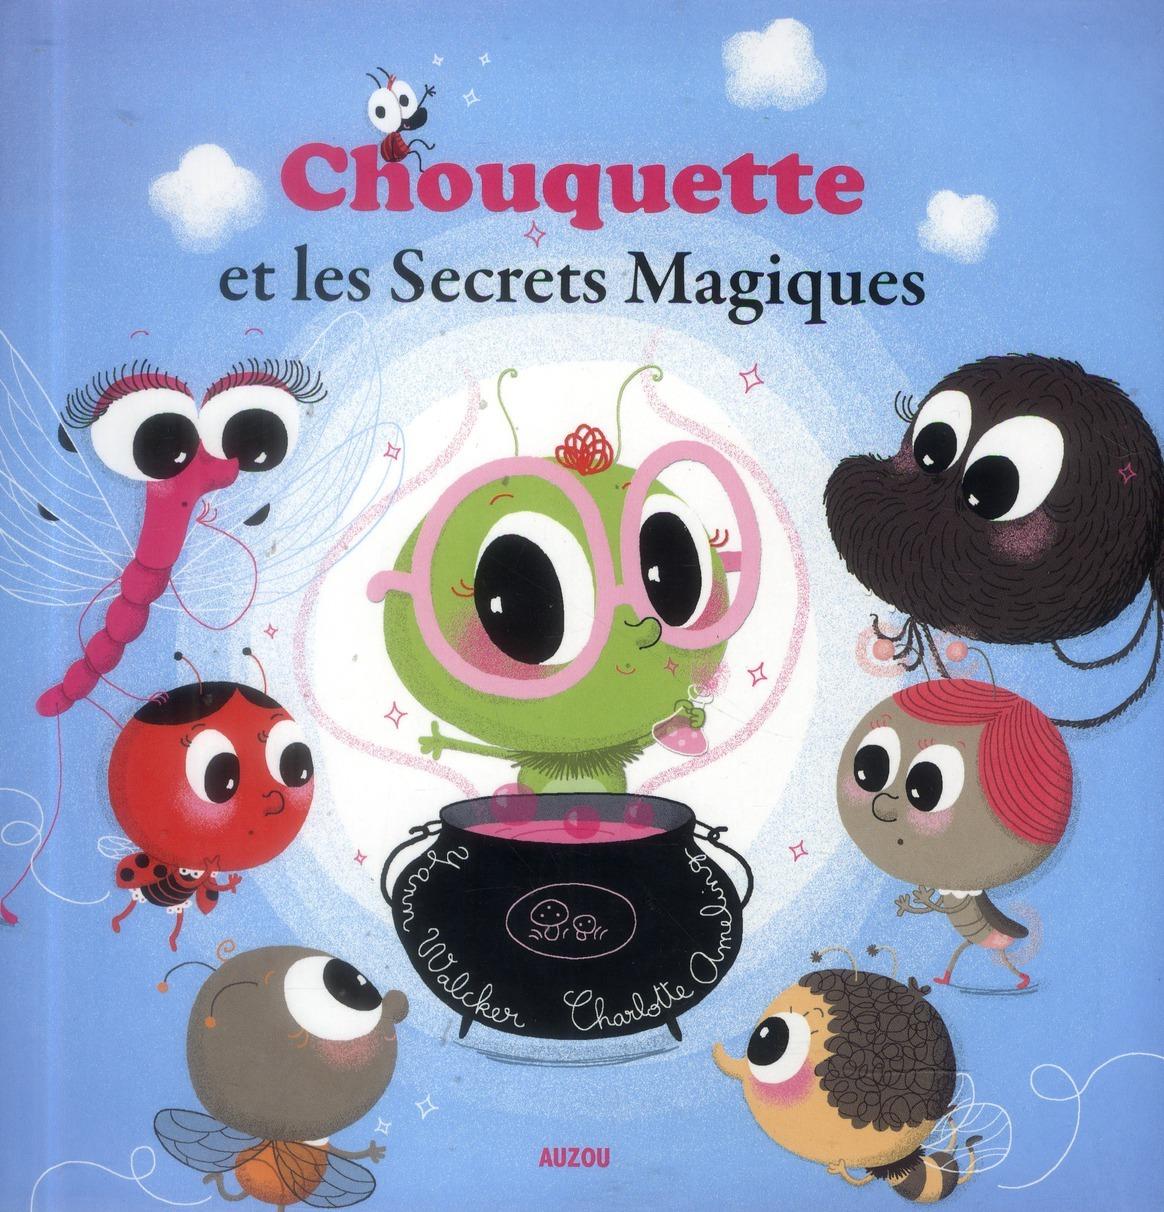 Foto Chouquette et les secrets magiques foto 527993